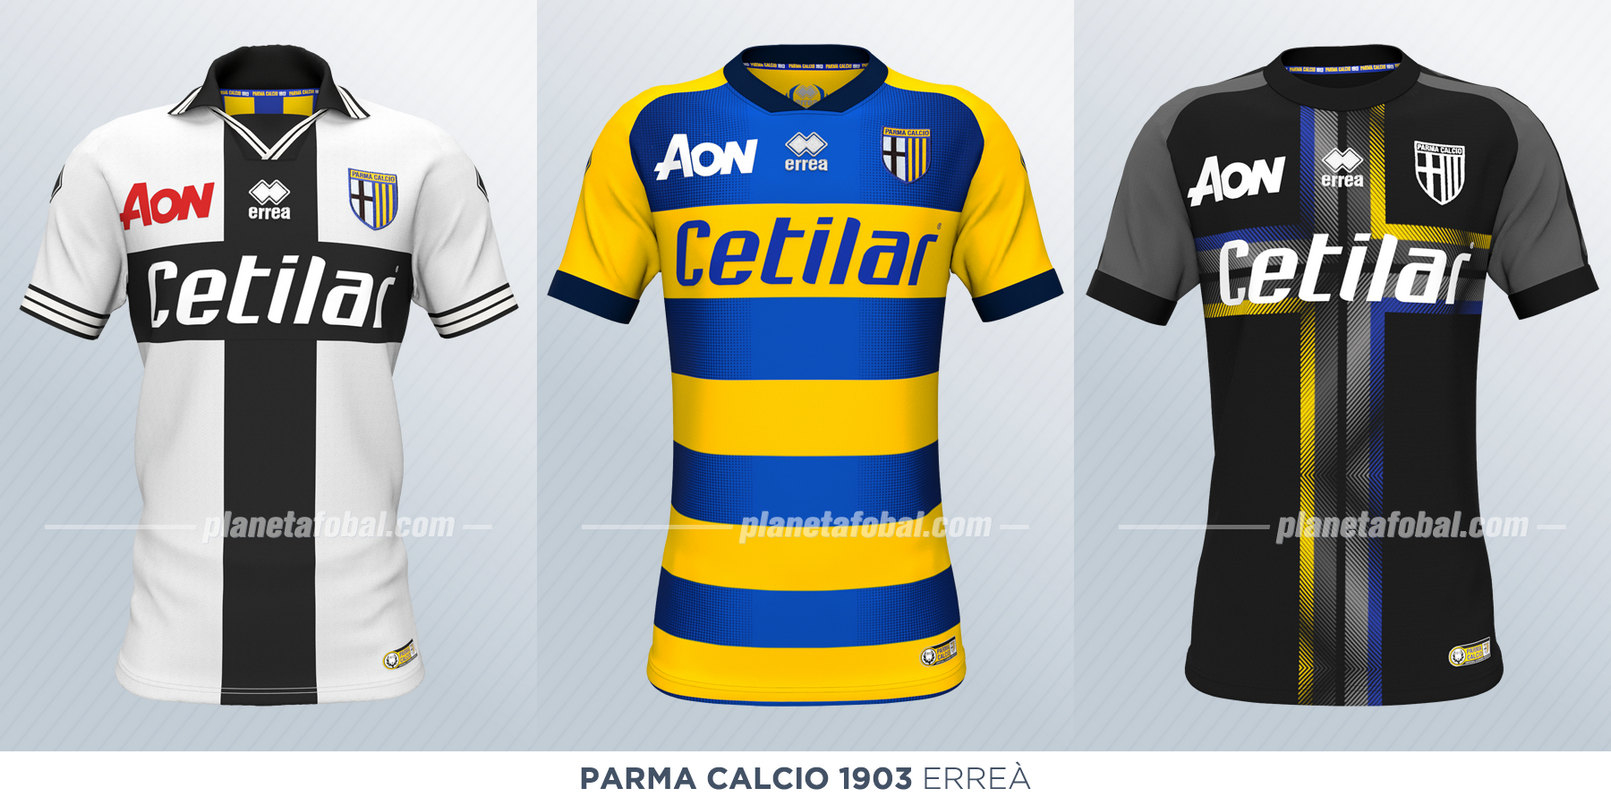 Camisetas de la Serie A 2018/19